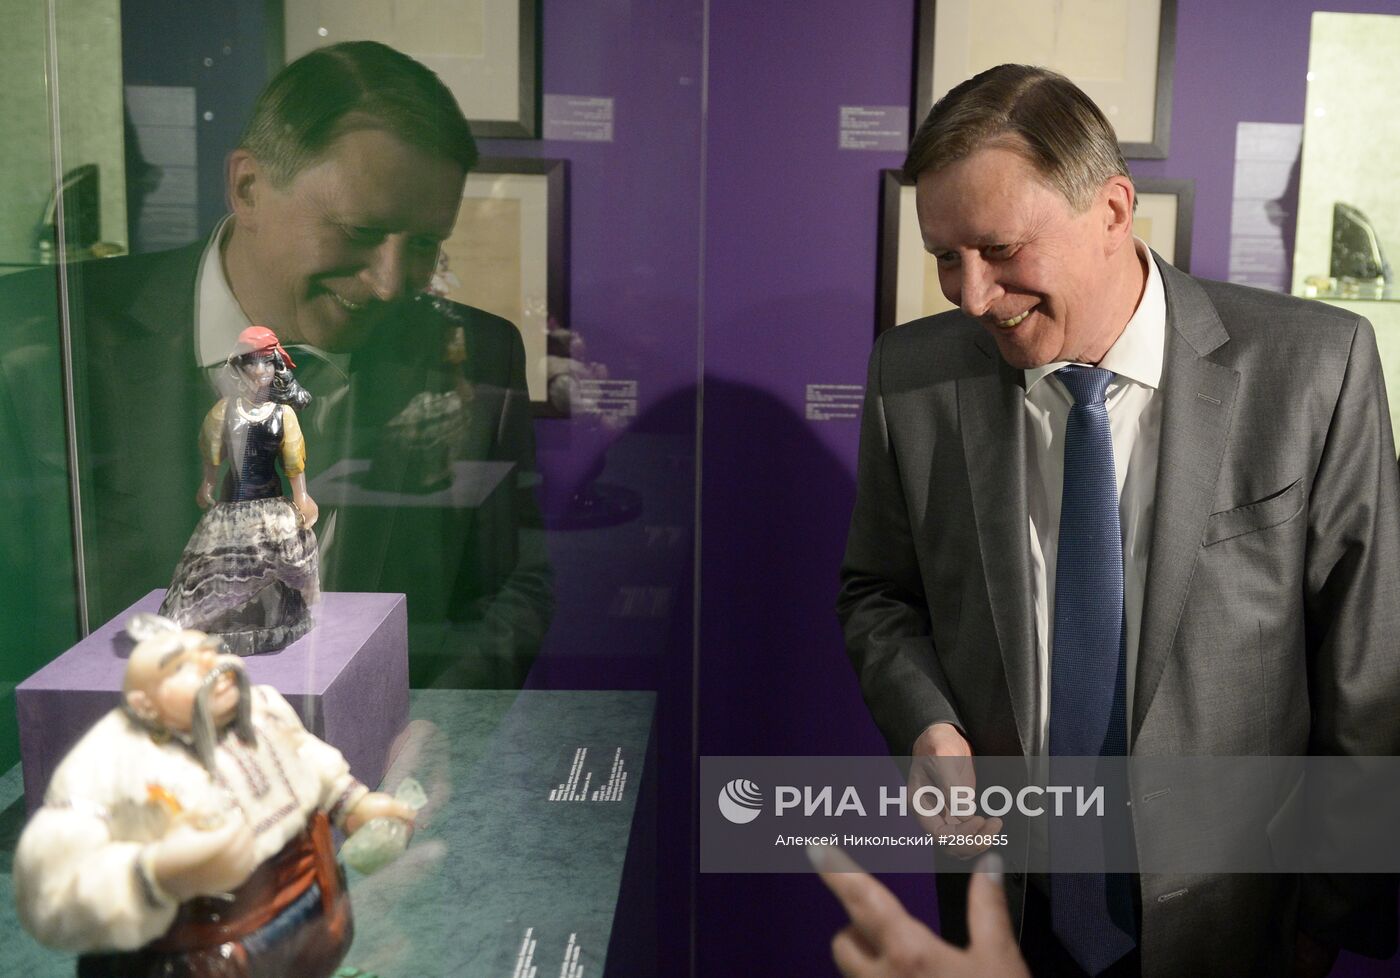 Выставка "Во власти камня" в Музеях Московского Кремля